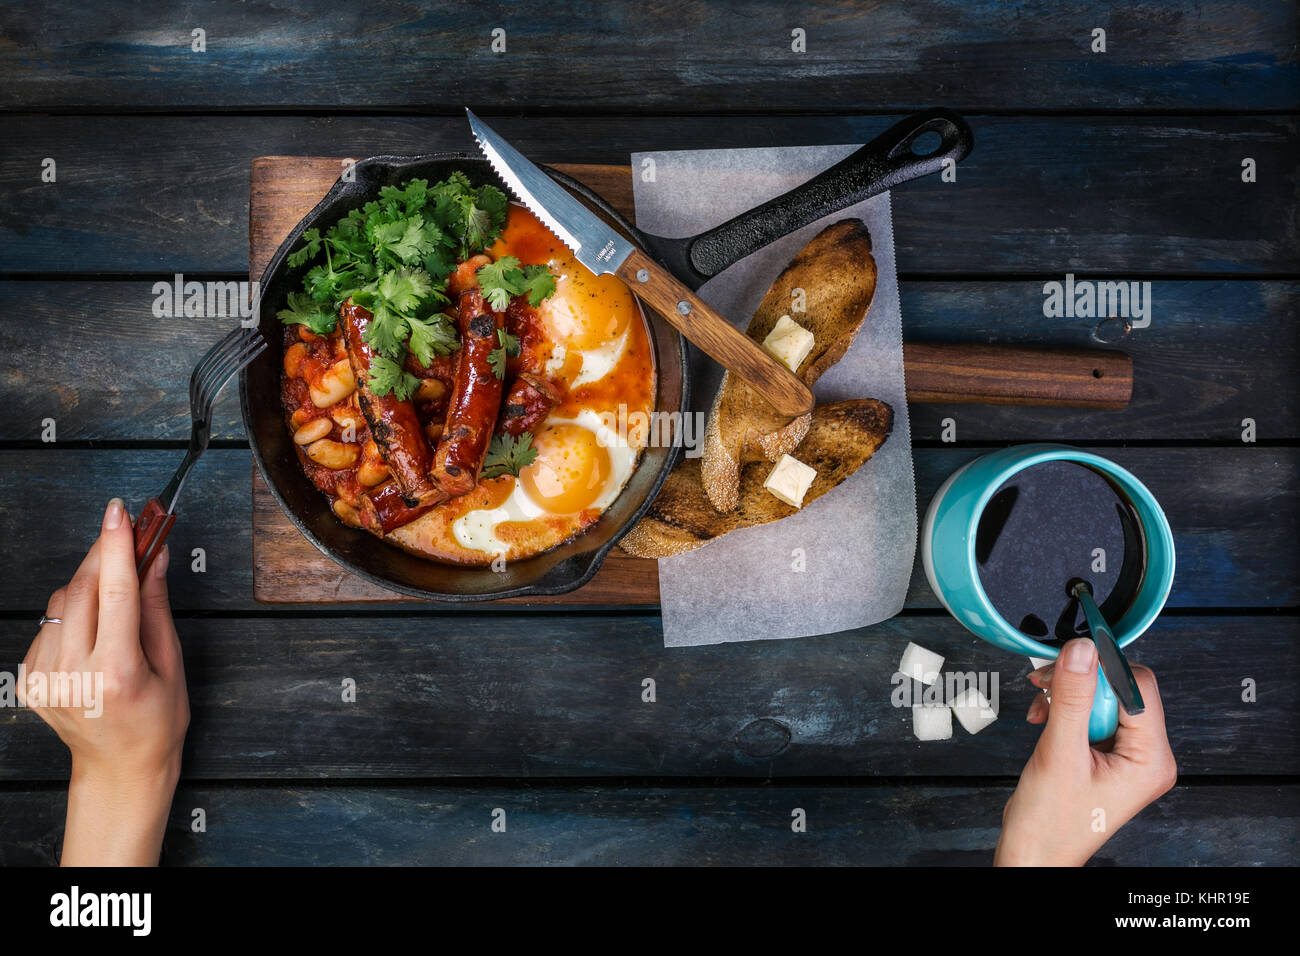 Frühstück in einer heißen Pfanne mit Spiegelei, Würstchen, Bohnen, Grün und Toasts. Frauen Hände mit Kaffee und Besteck. Auf einem farbigen Holz- Bac Stockfoto